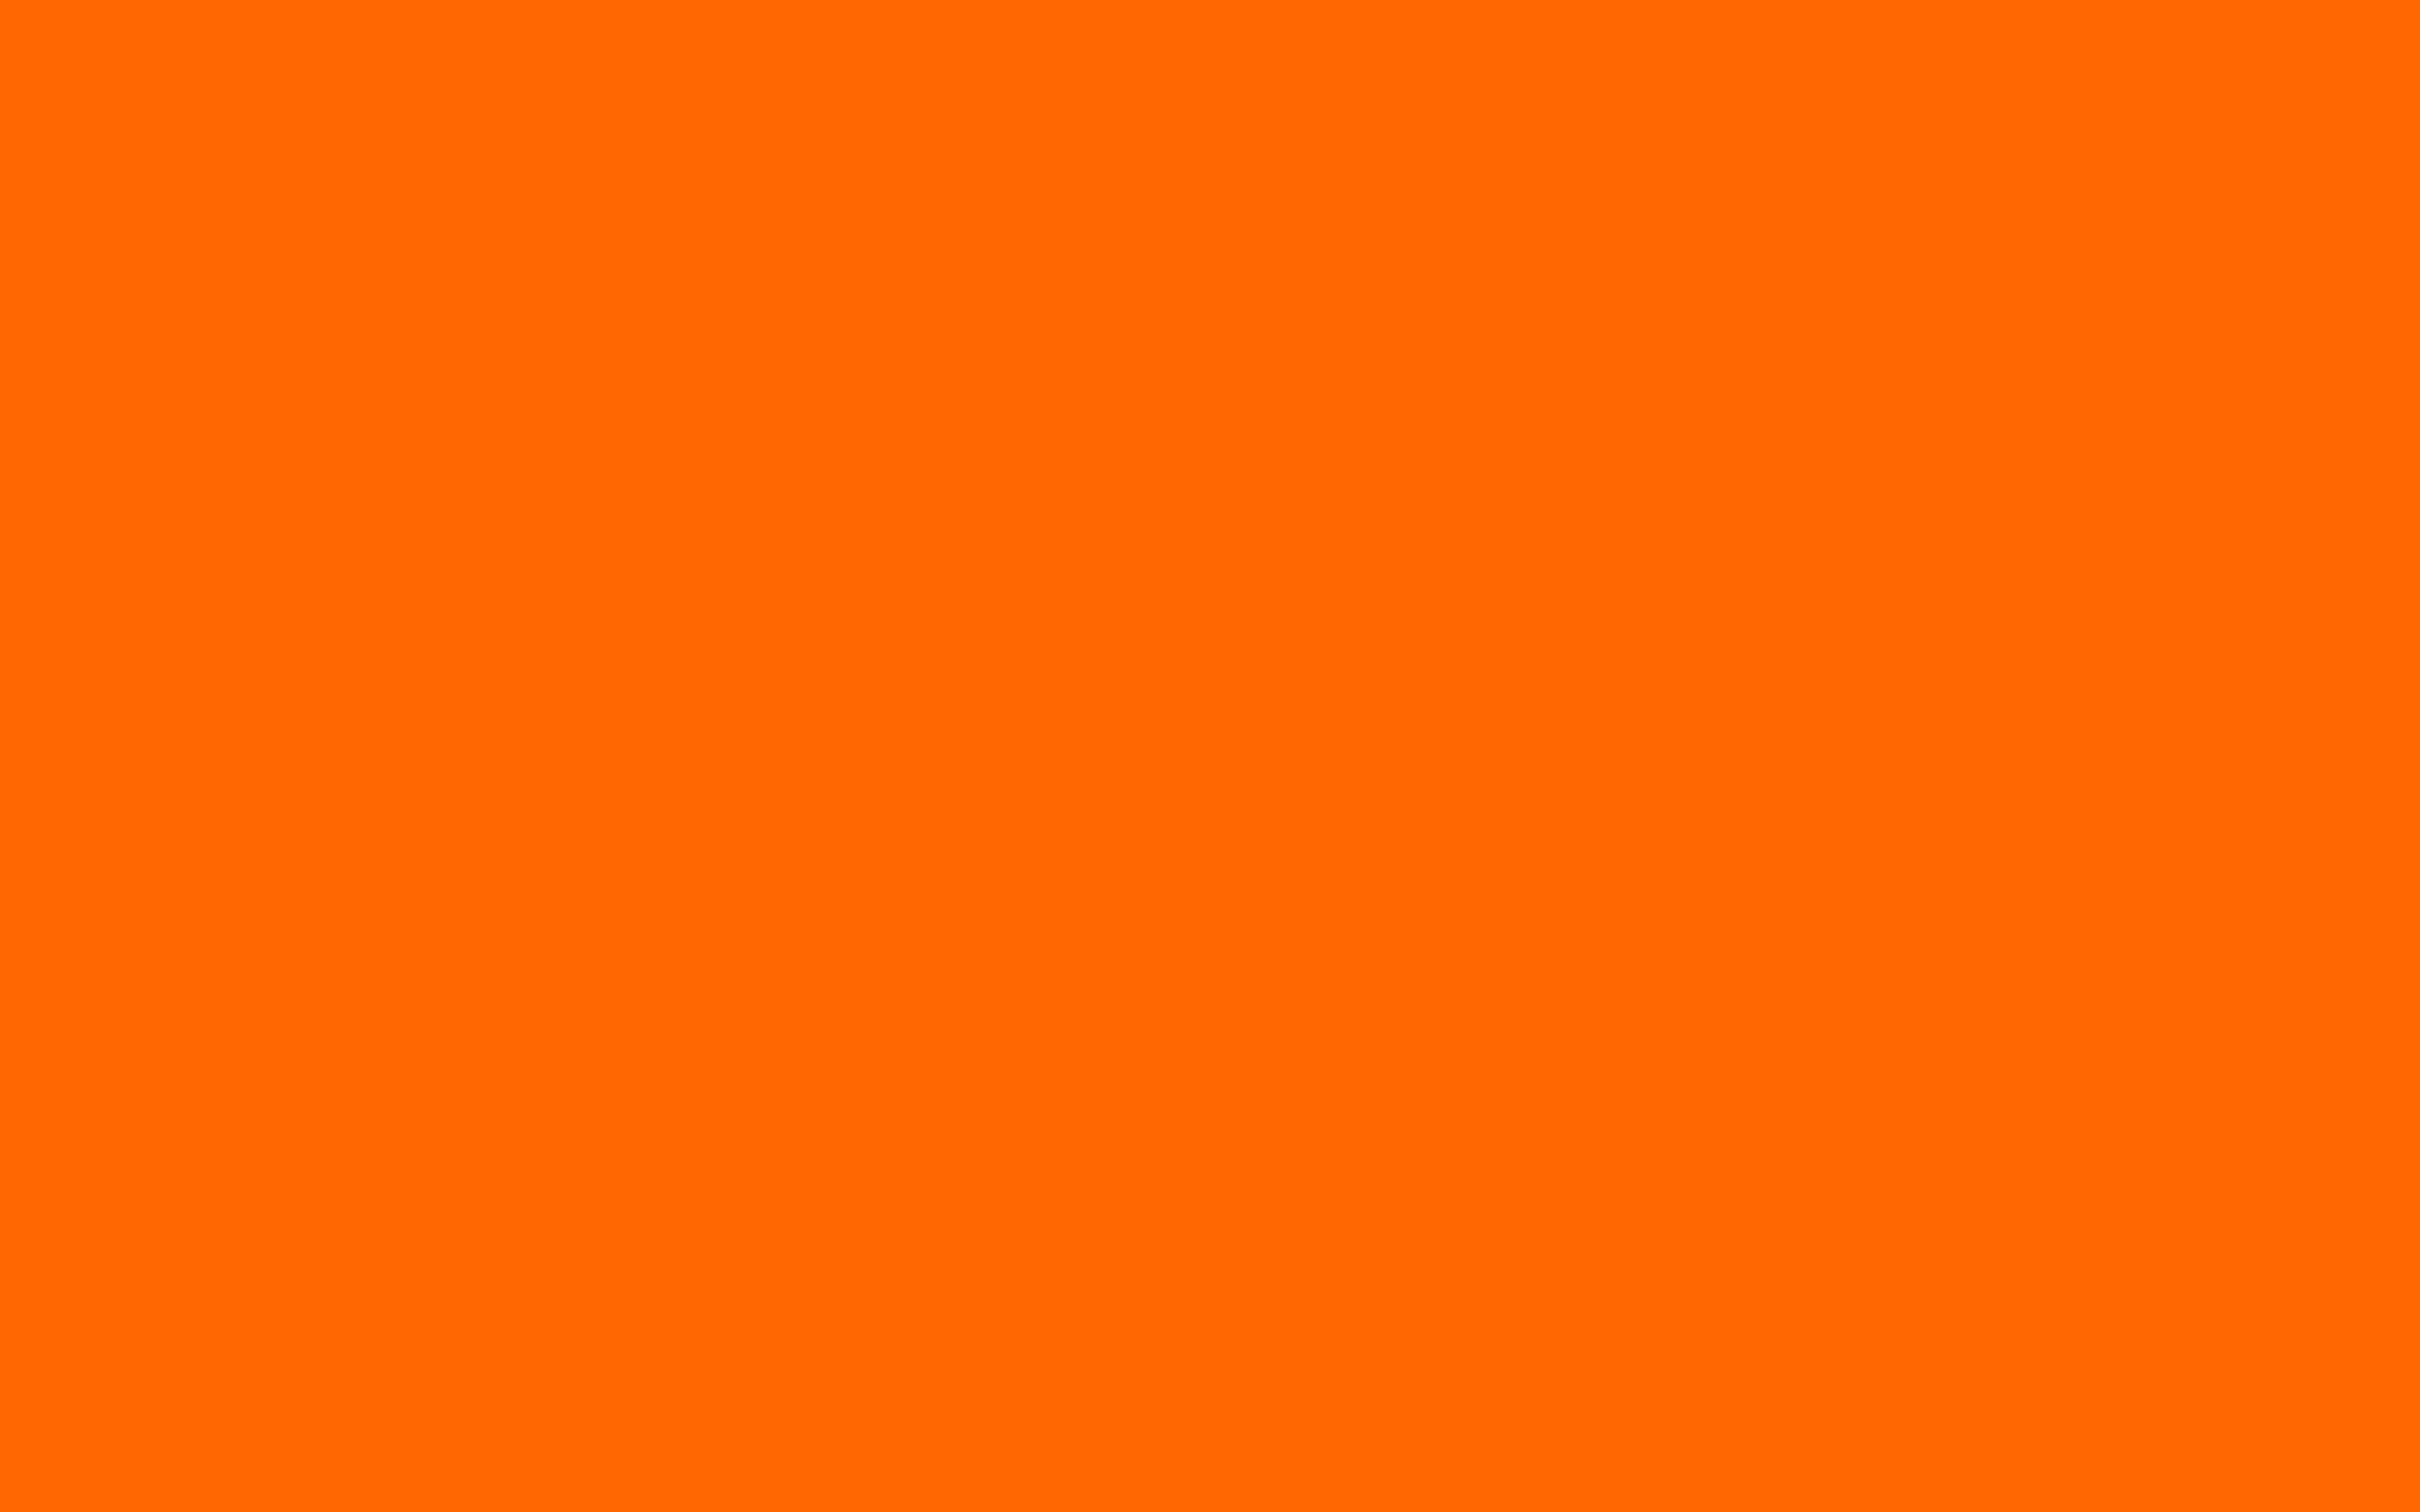 Cho dù bạn đang muốn thay đổi hình nền cho máy tính hay điện thoại của mình, trang web Wallpaper Cave sẽ là nơi lý tưởng để khám phá những hình nền màu cam tuyệt đẹp. Với các tùy chọn đa dạng và chất lượng hình ảnh chất lượng cao, bạn sẽ không thể cưỡng lại được!